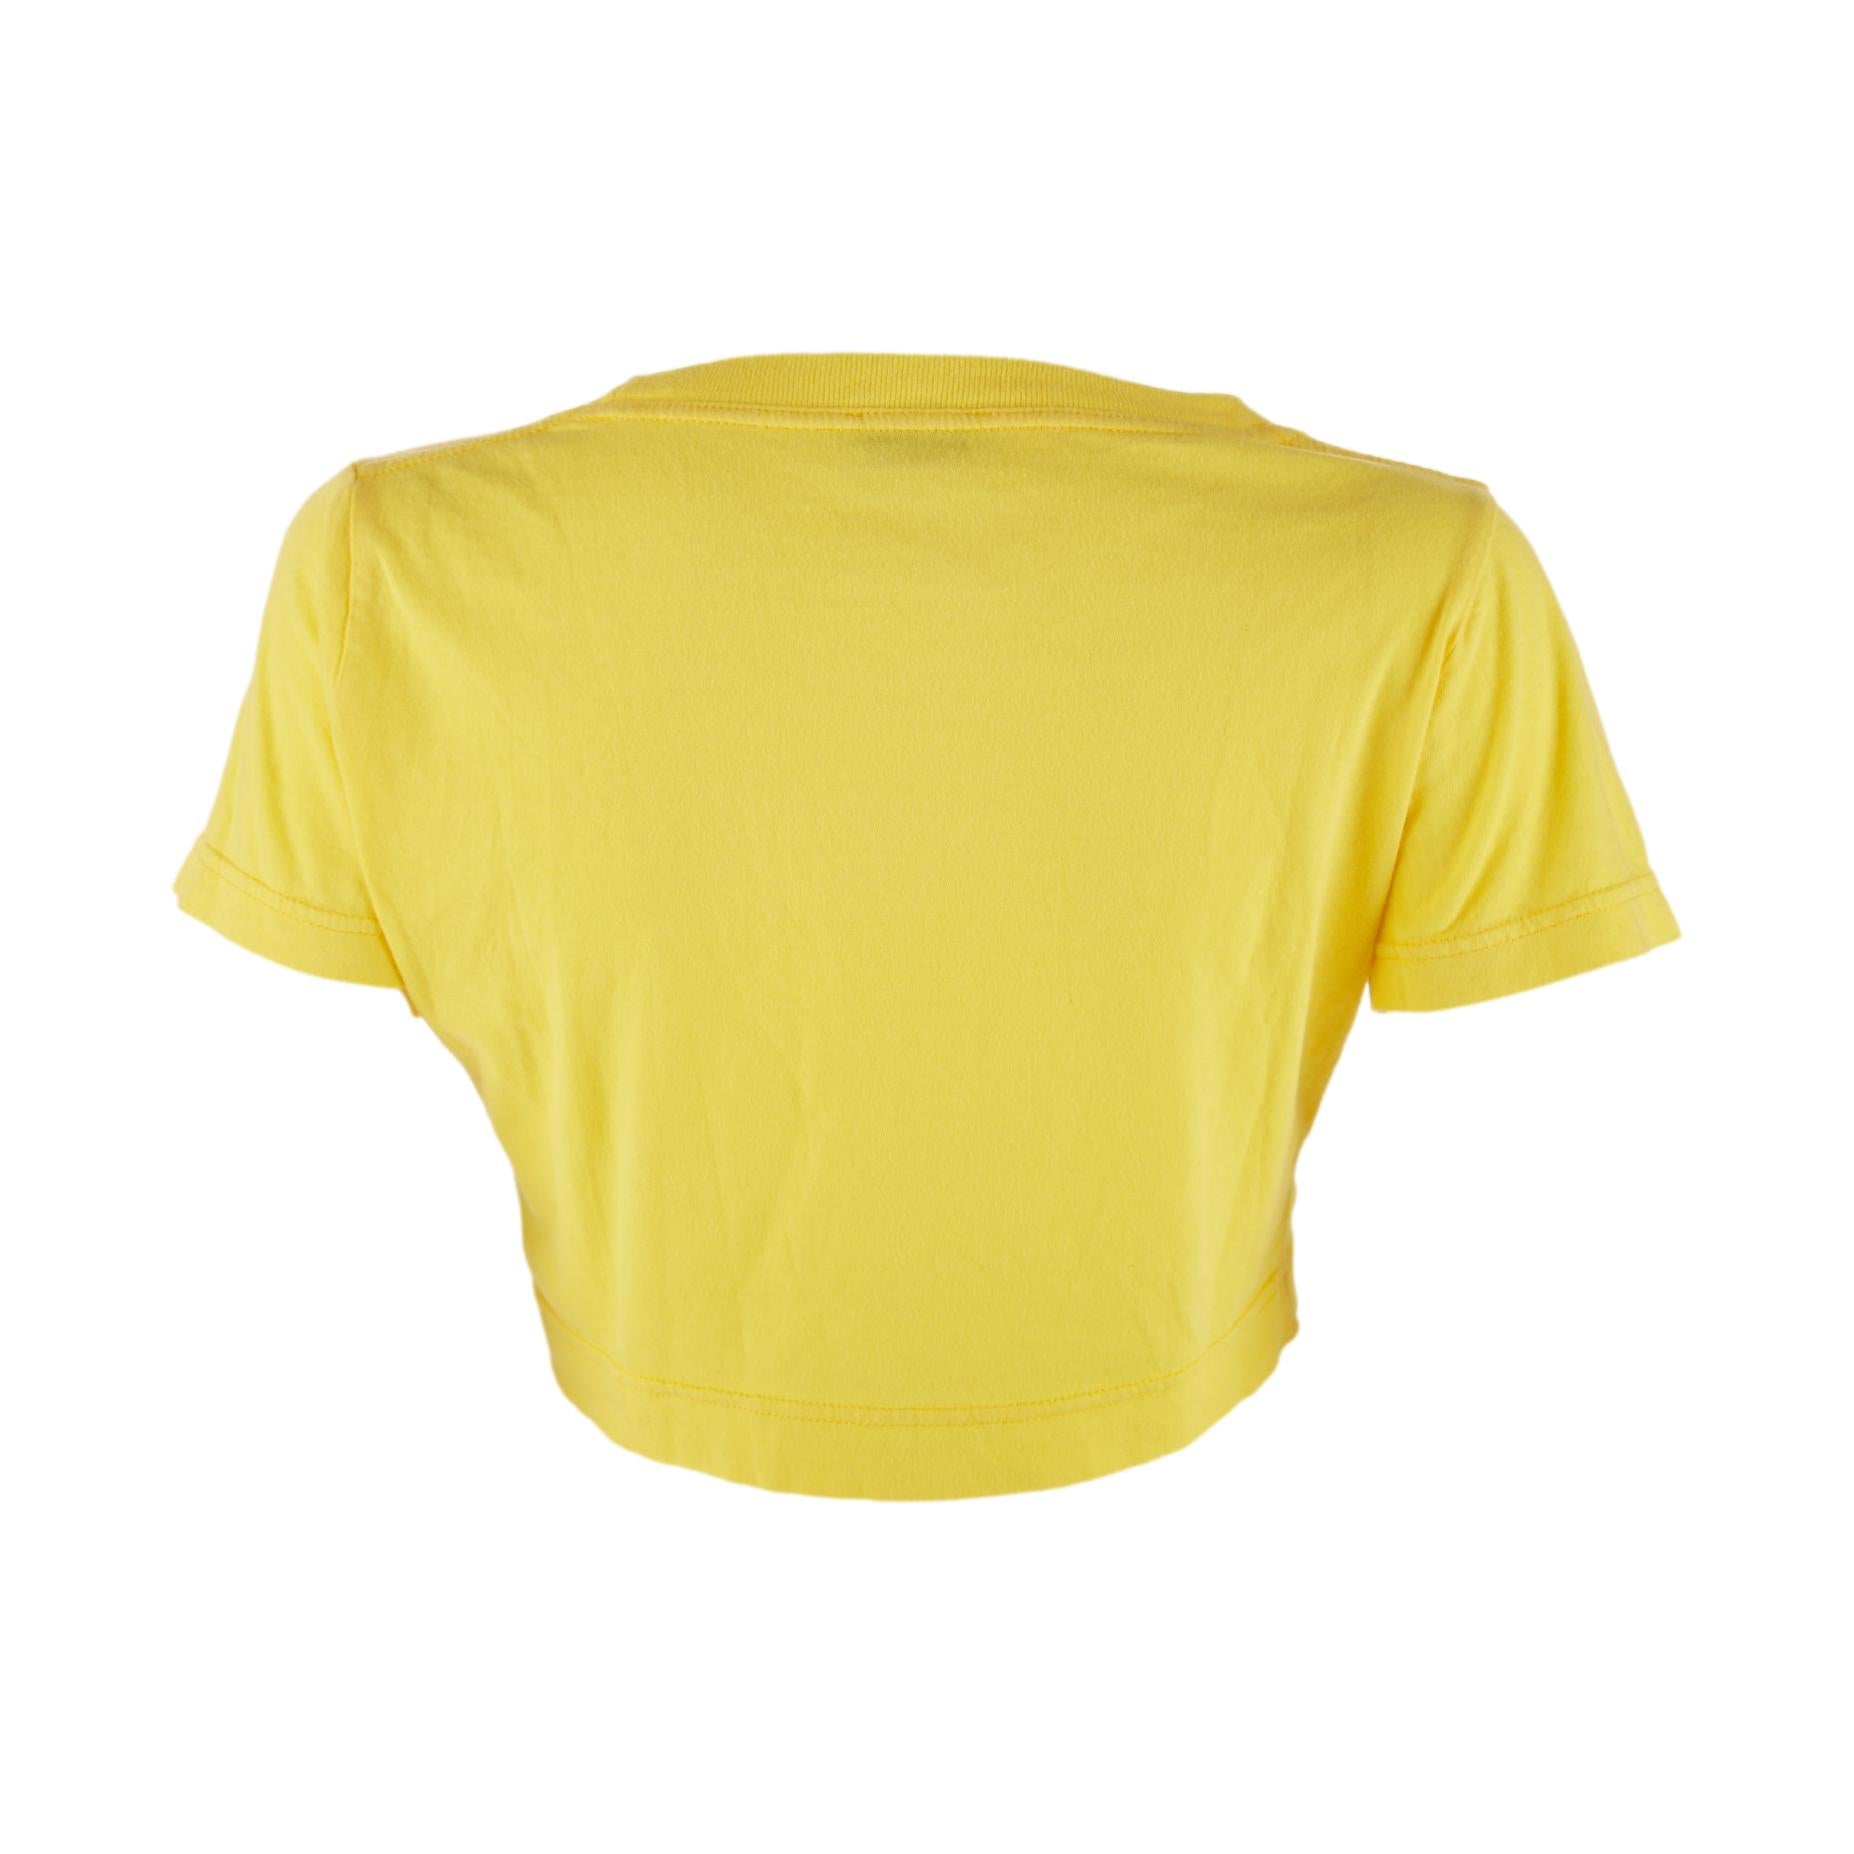 Versace Sport Yellow Logo Crop Top